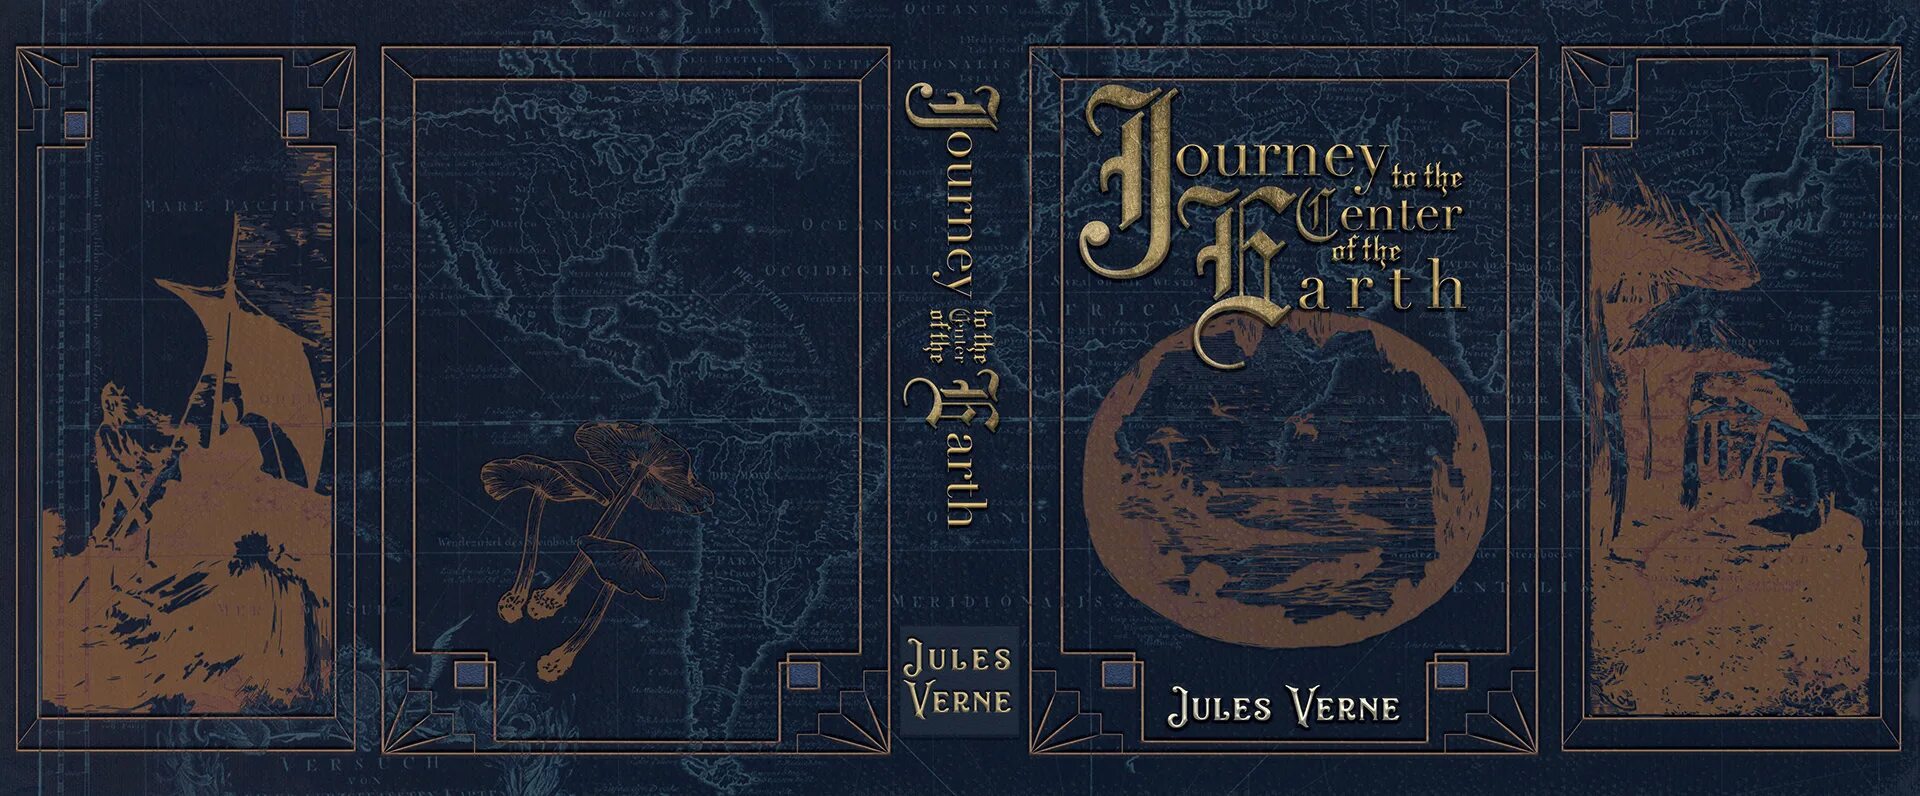 Jules Verne книги. Обложки книг Жюль верна. Жюль Верн с земли на луну обложки книги. Таинственный остров Жюль Верн книга.